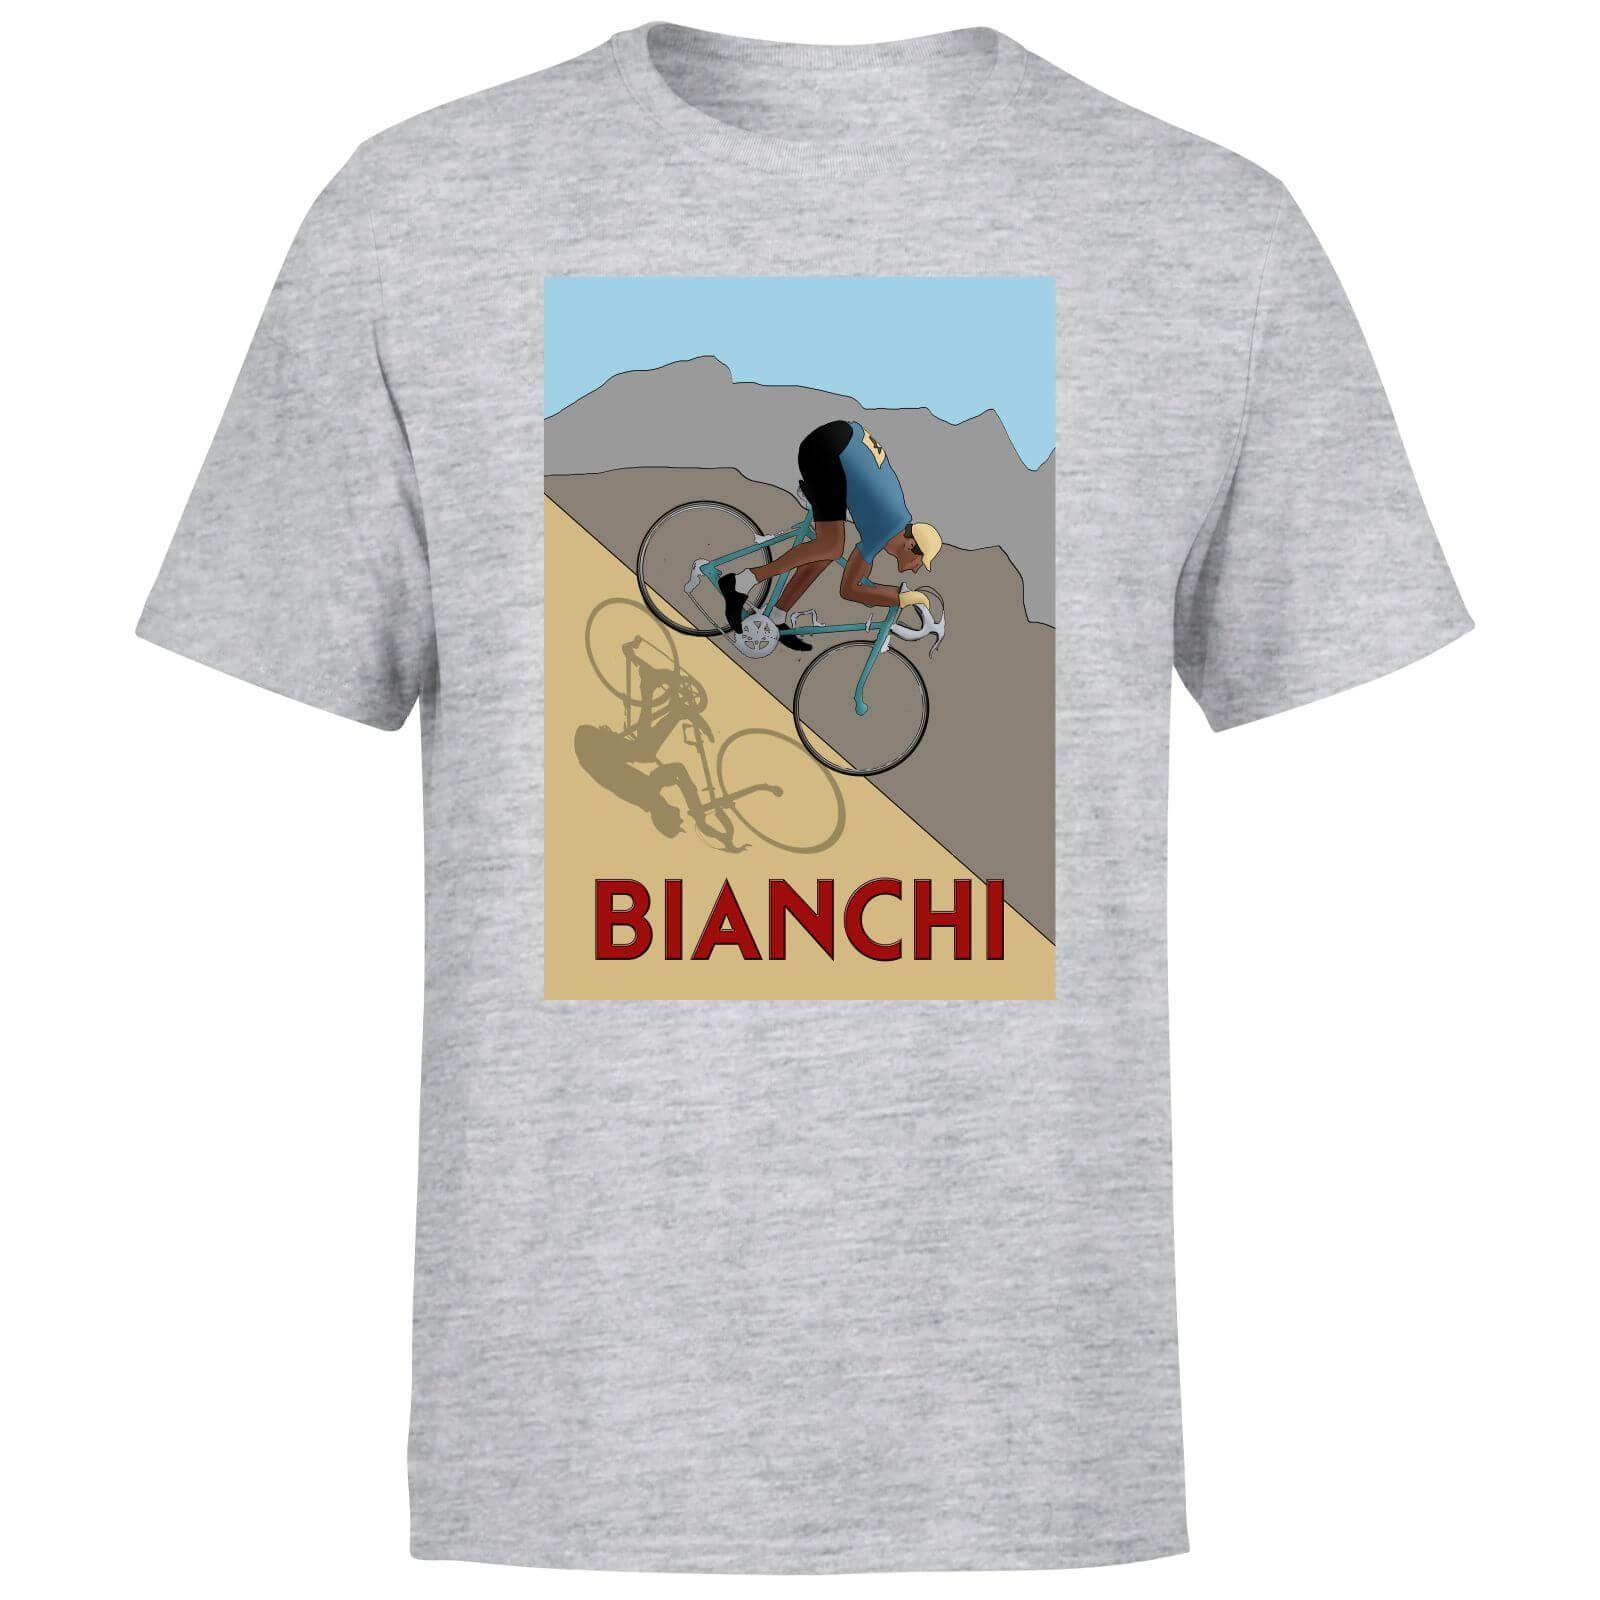 Bianchi Men's T-Shirt - Grey - XS - Grey